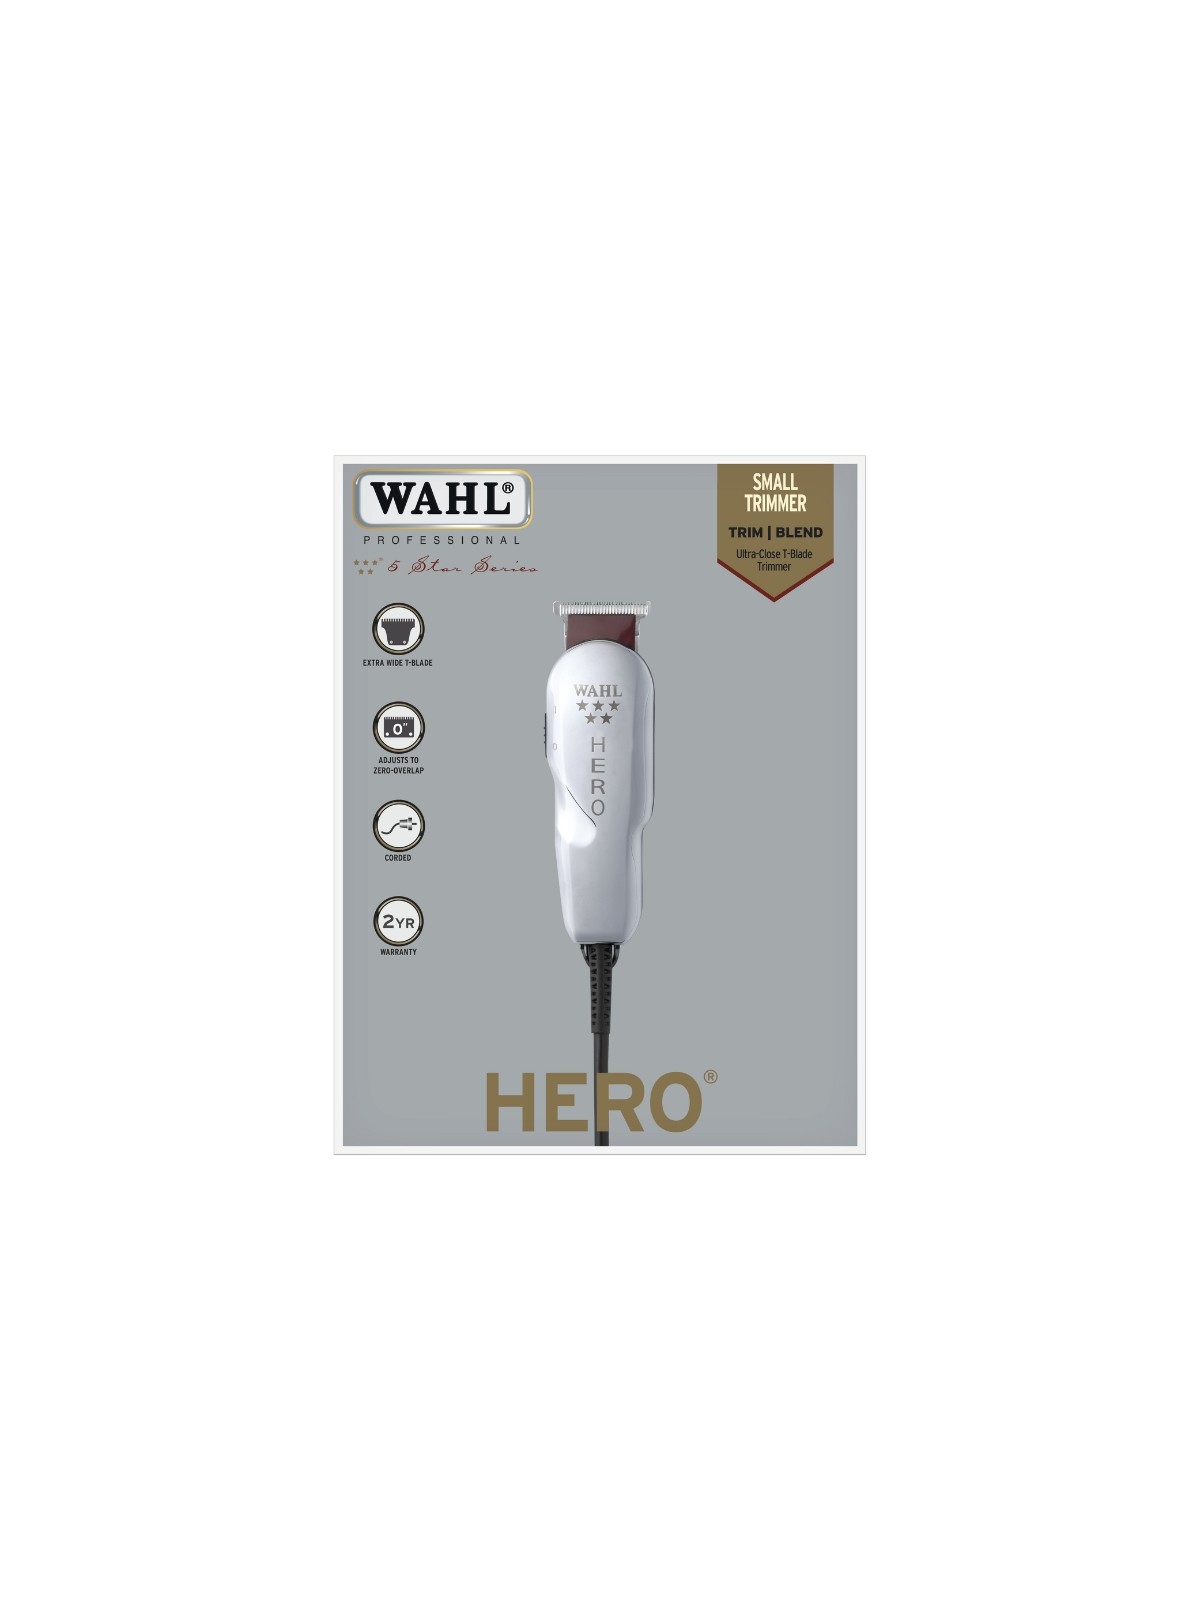 Máquina Wahl Hero con cable